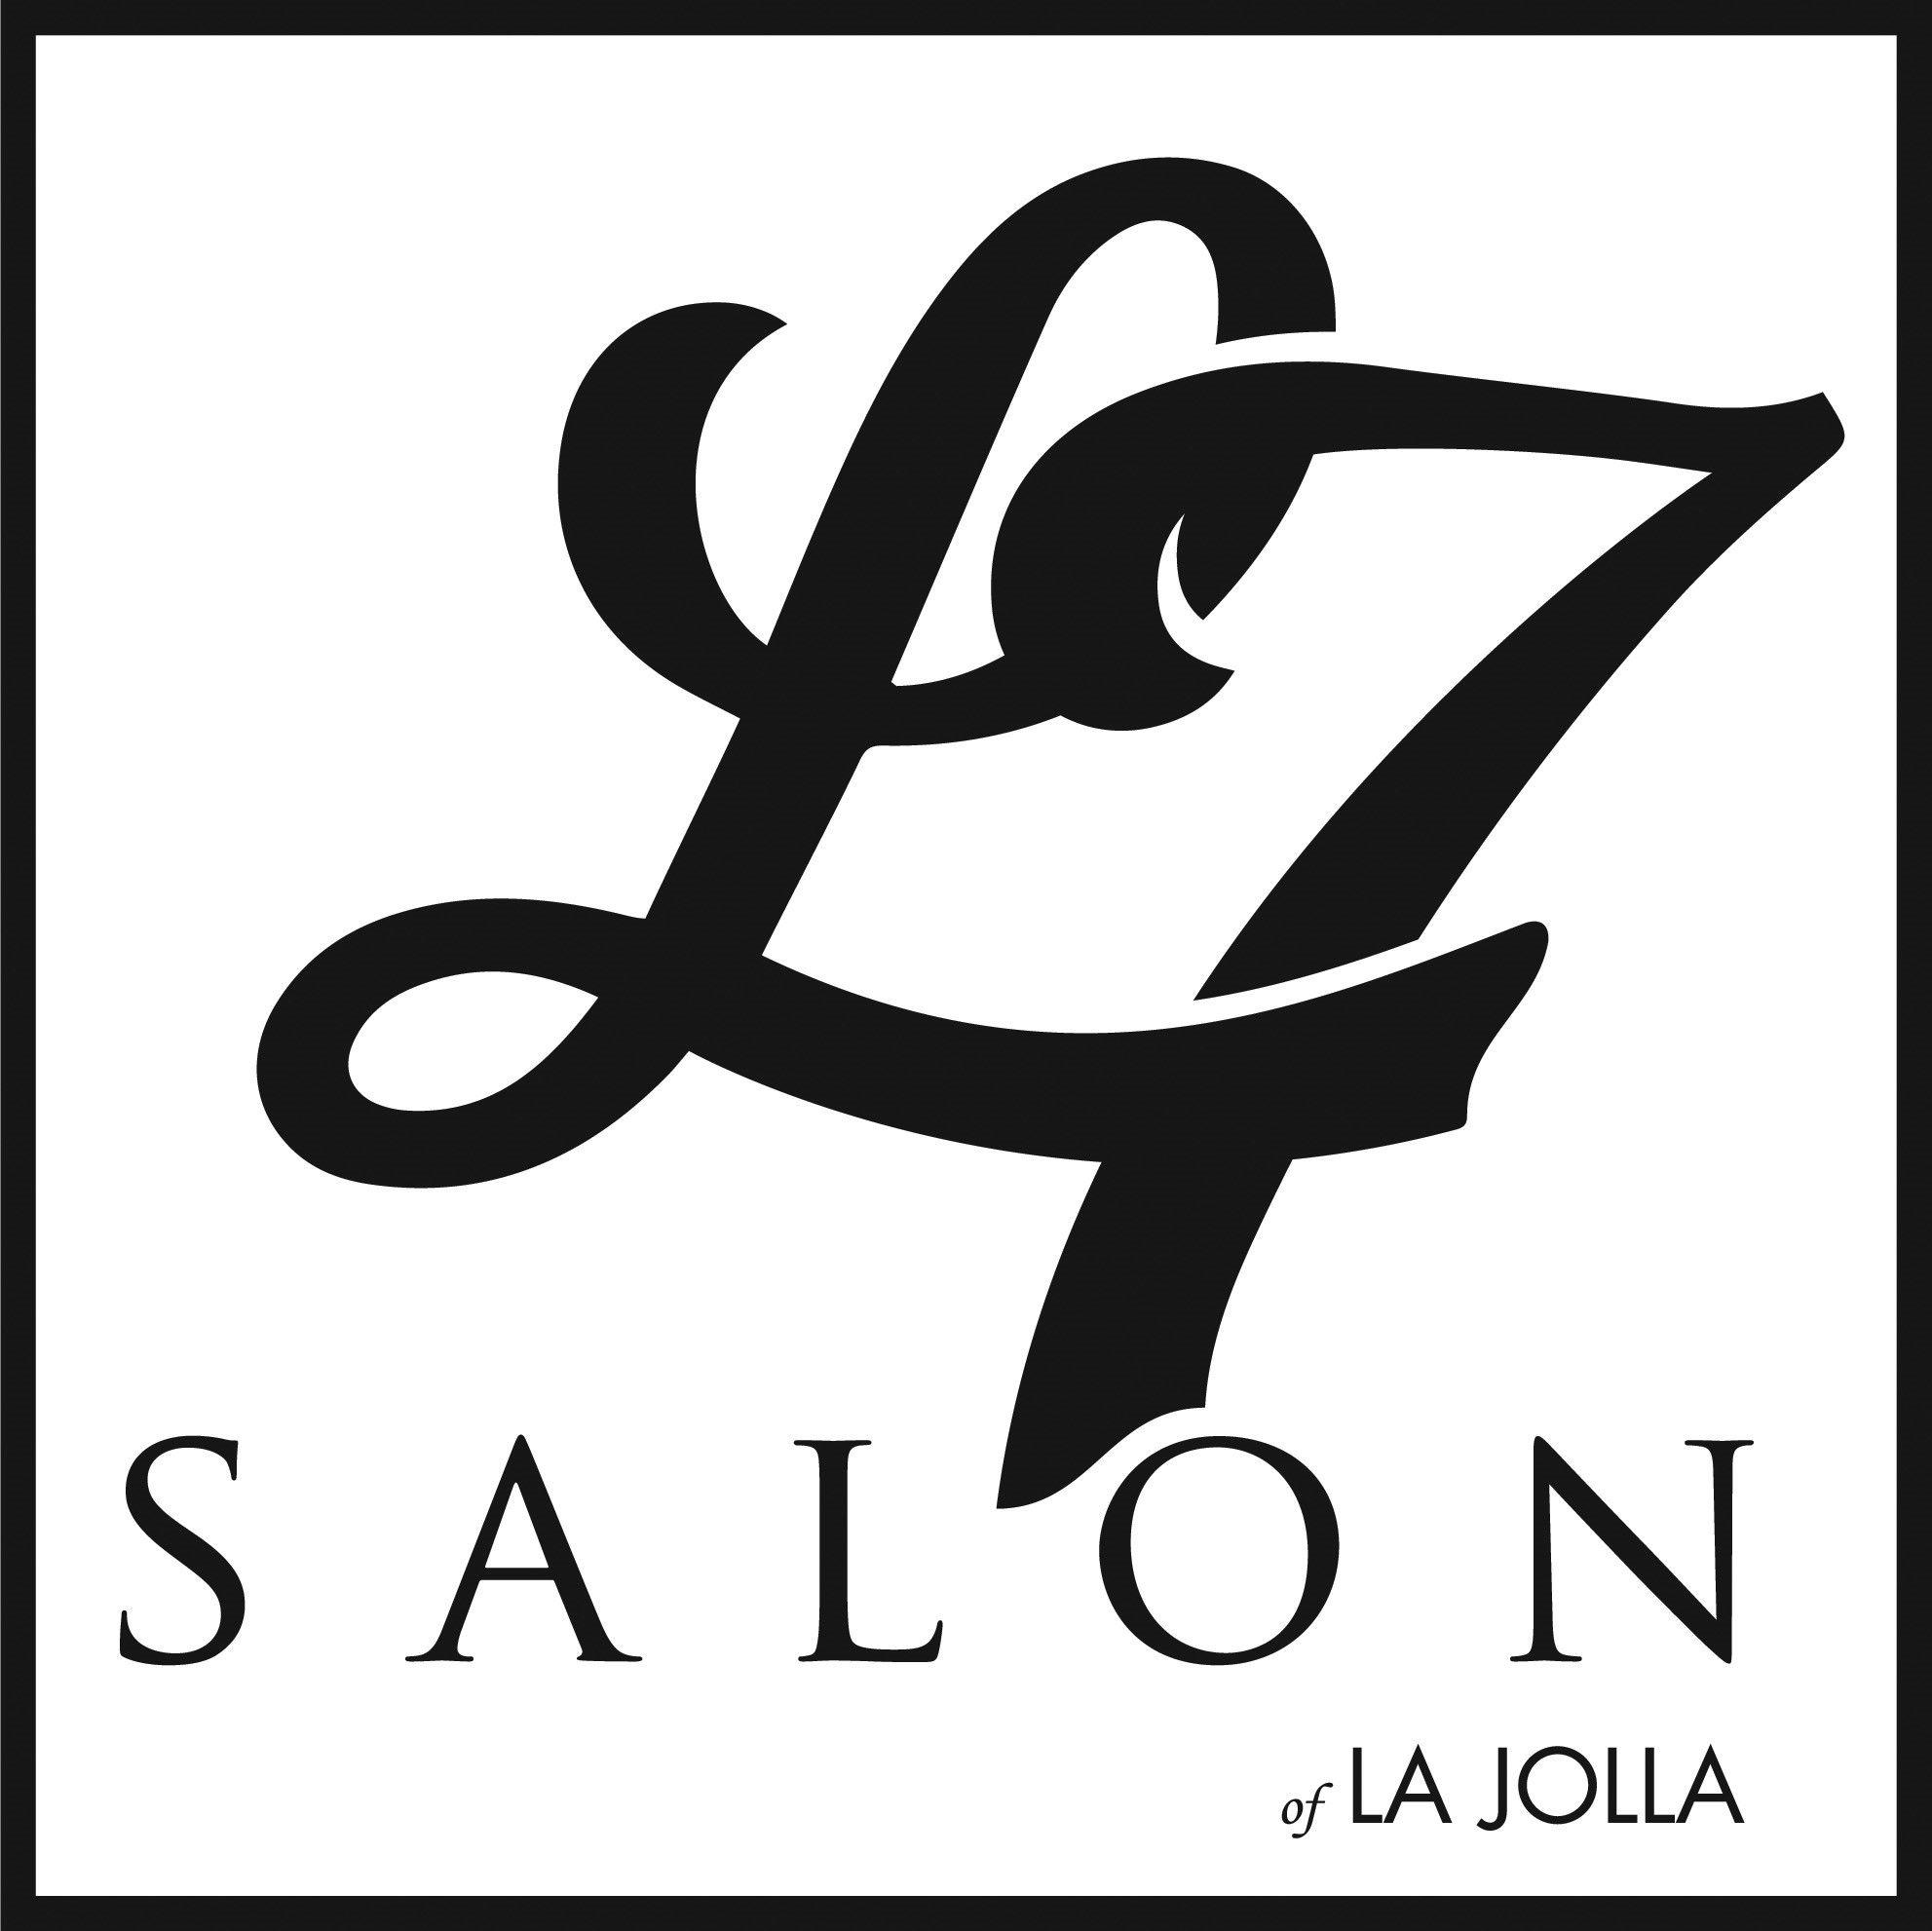 L7 Logo - L7 LOGO 02 Salon La Jolla